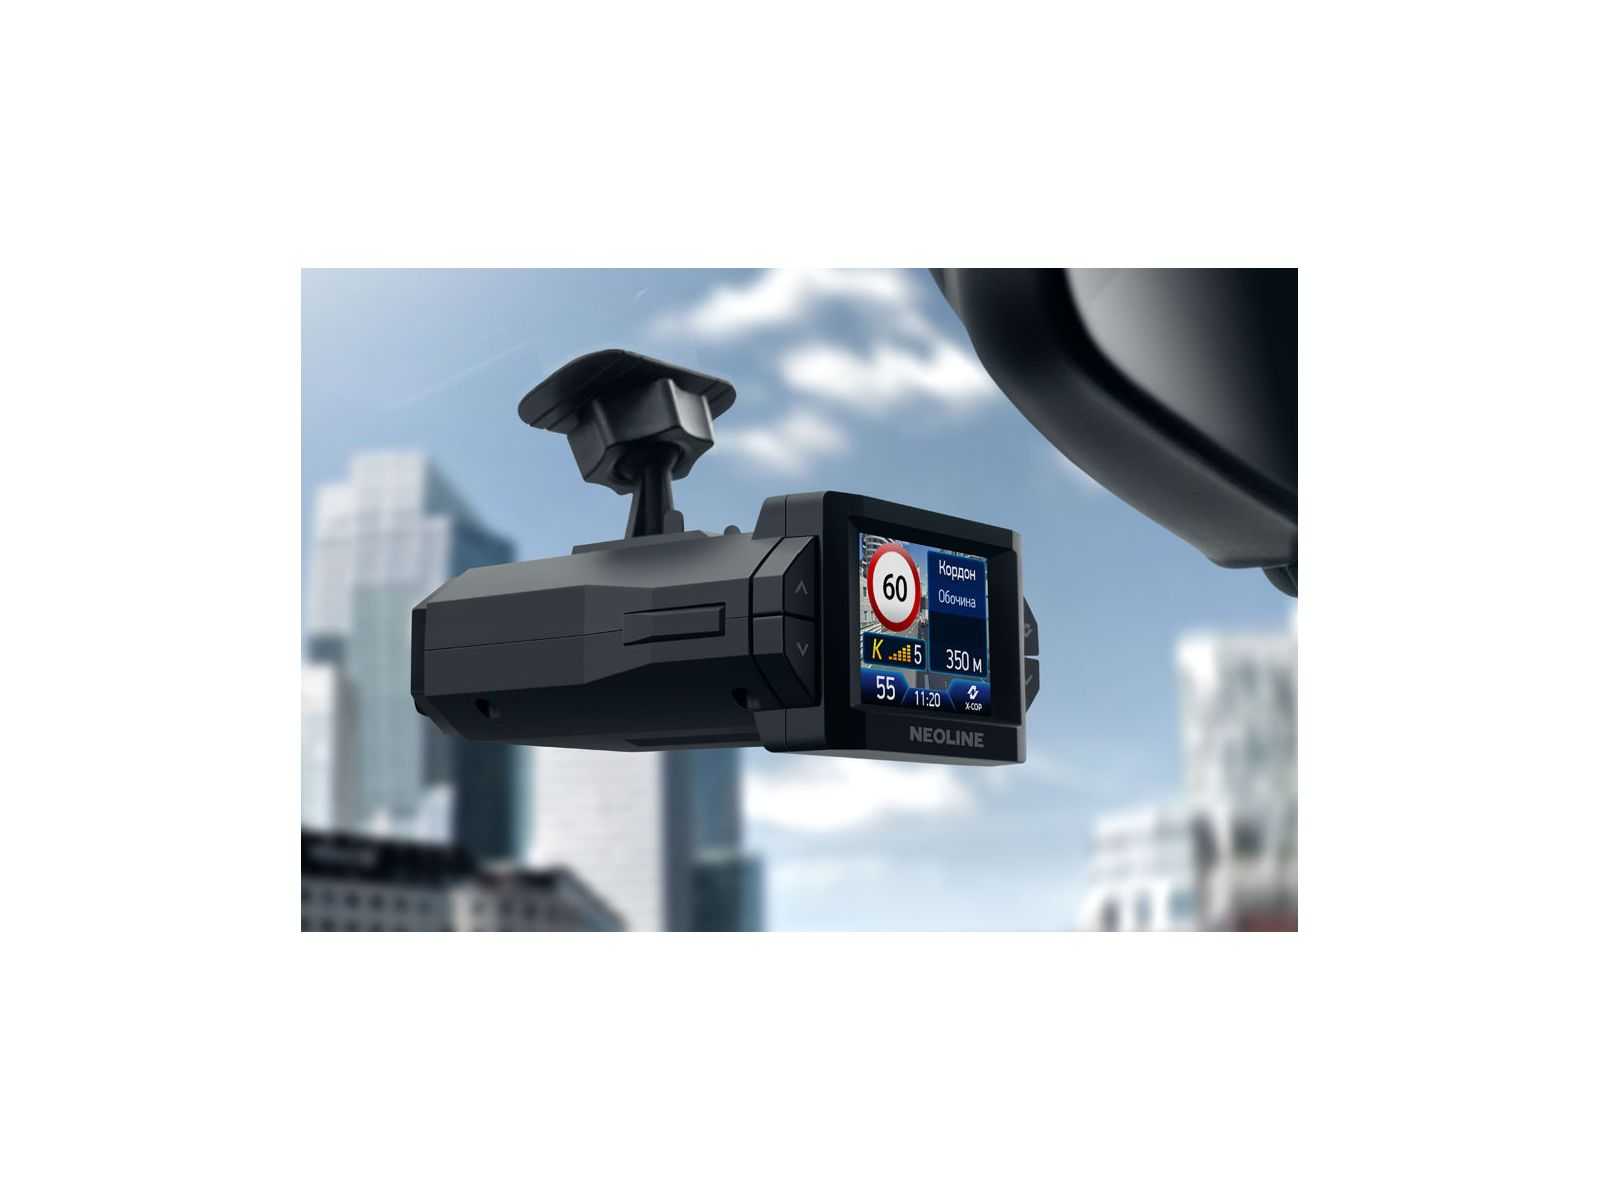 Обзор видеорегистратора Neoline Cubex V31 особенности модели надежность подробные характеристики качество видео съемки